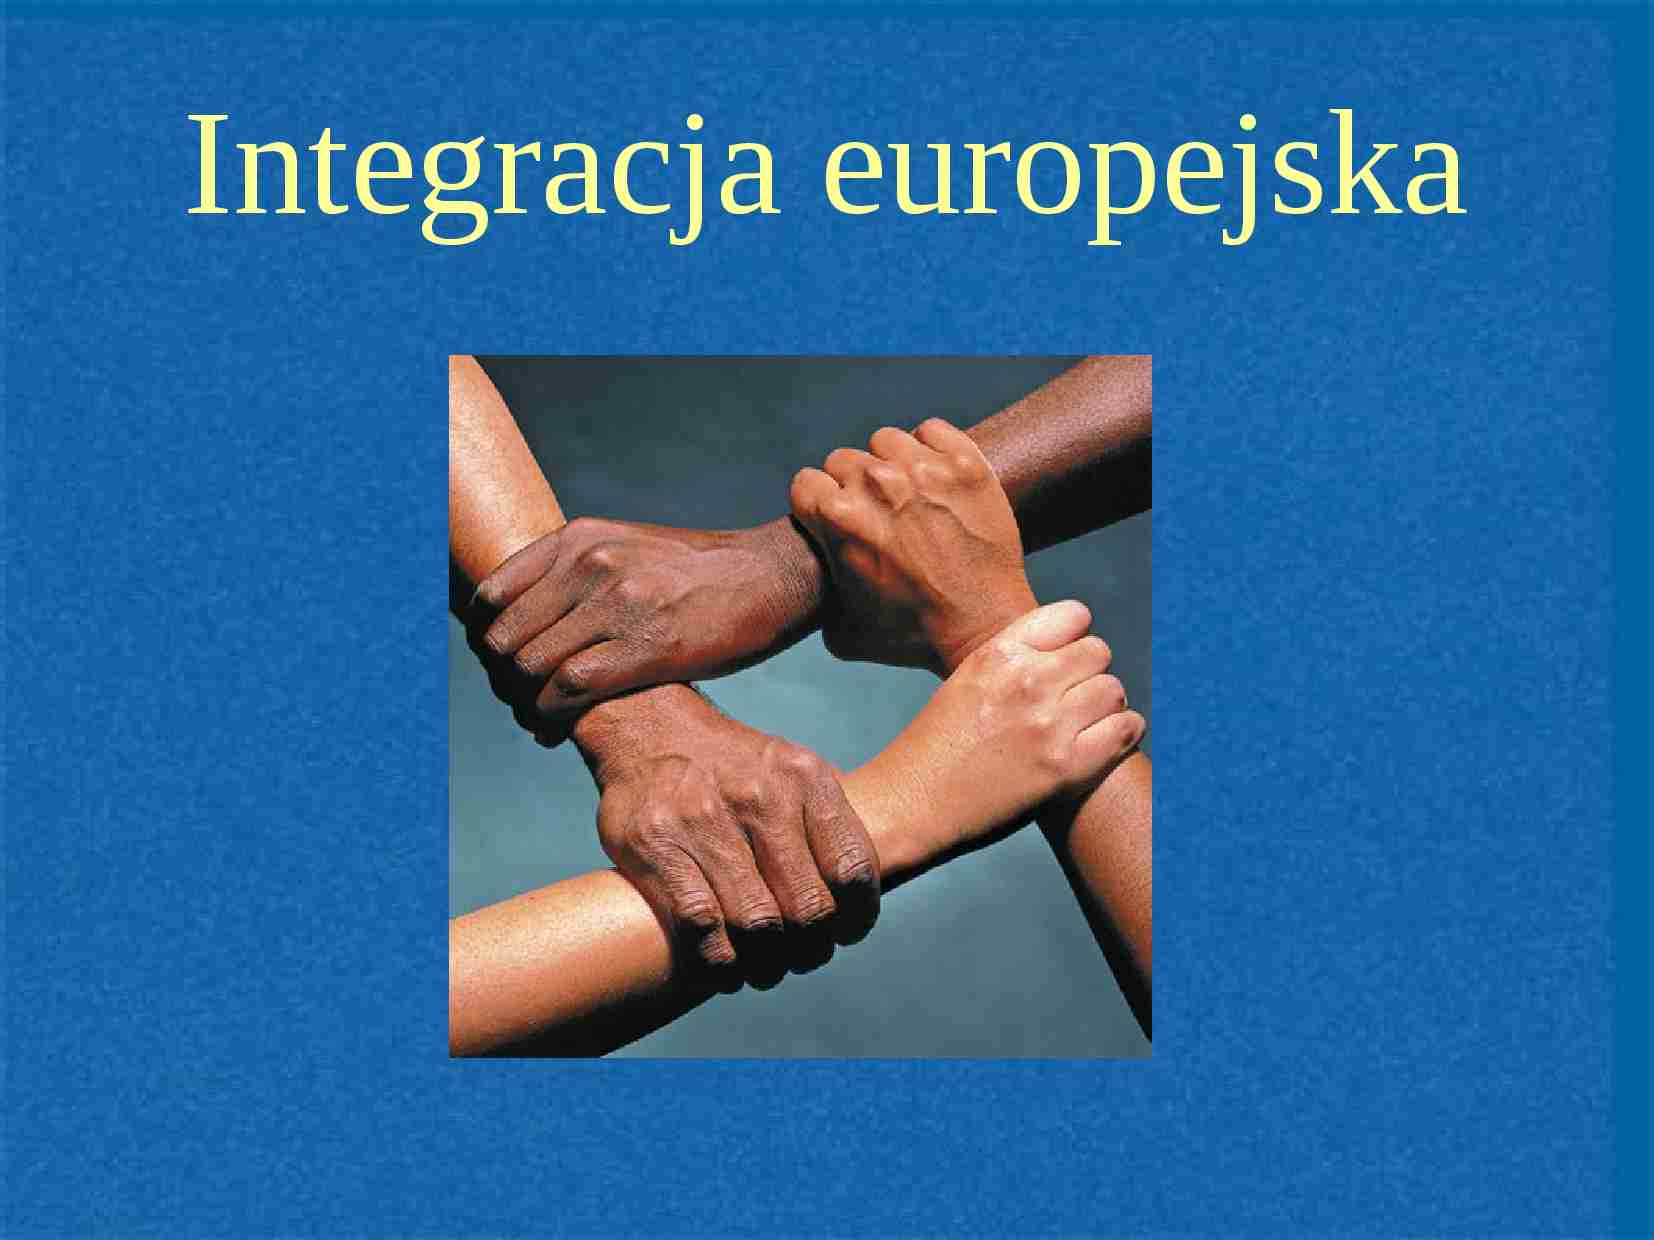 Integracja europejska - prezentacja - strona 1